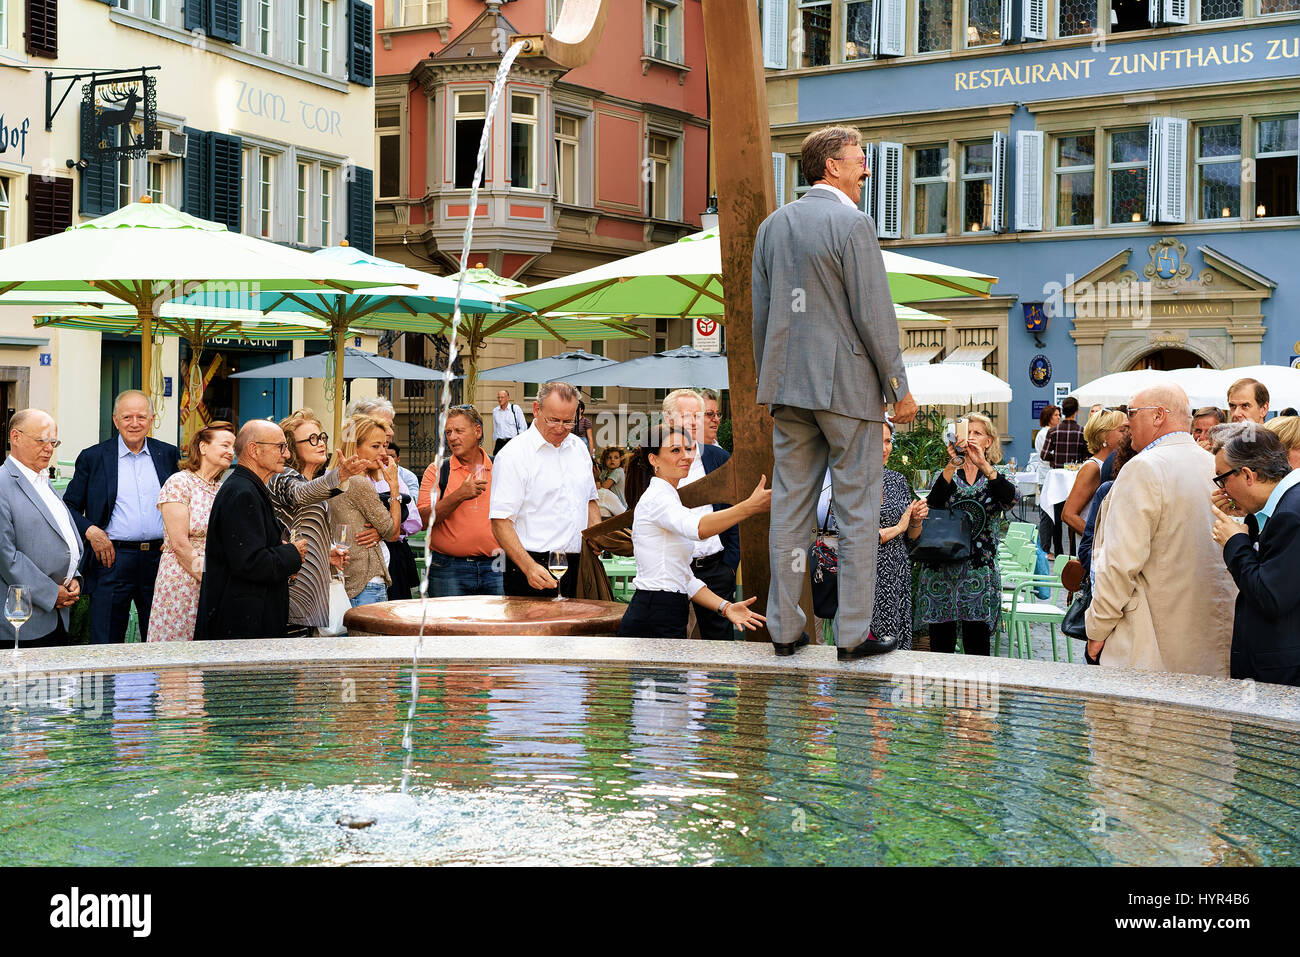 Zurich, Switzerland - September 2, 2016: People and fountain at Munsterhof square, Zurich, Switzerland Stock Photo